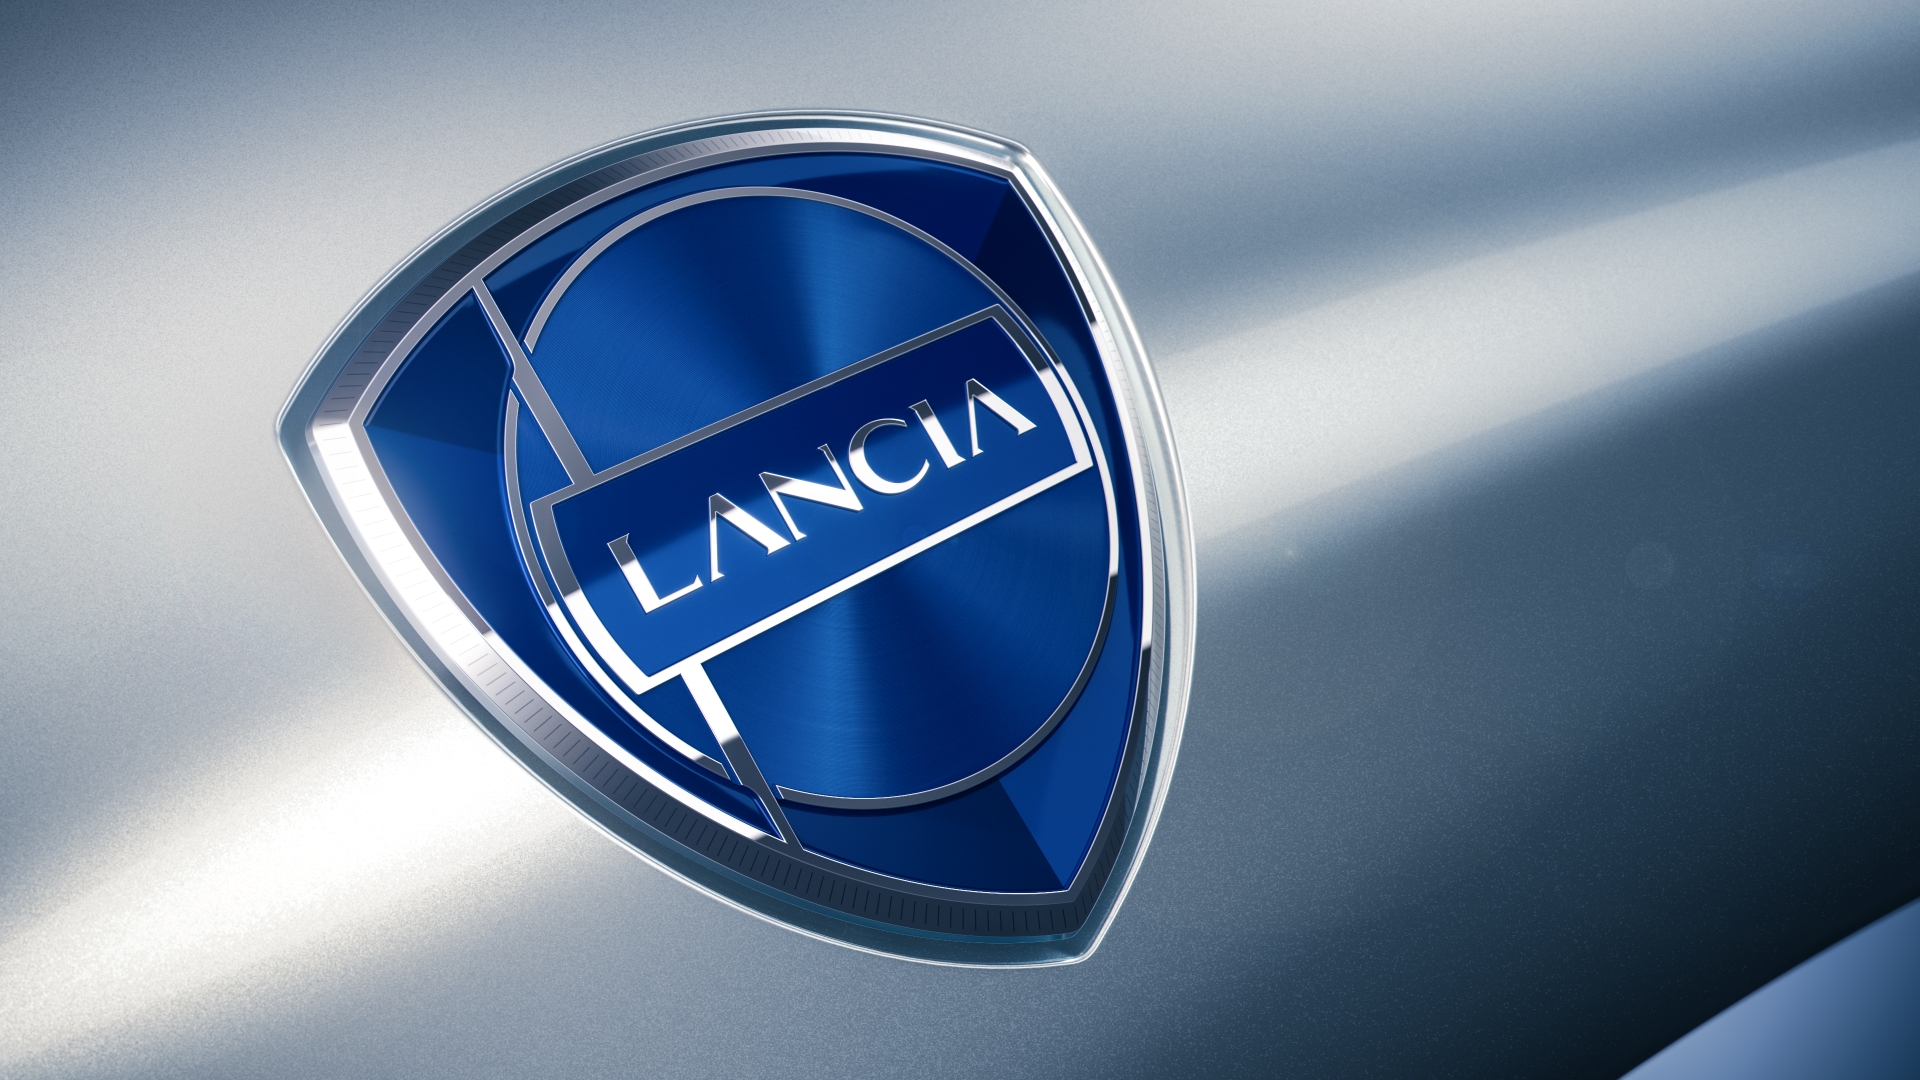 Η νέα εποχή της Lancia ξεκινά!